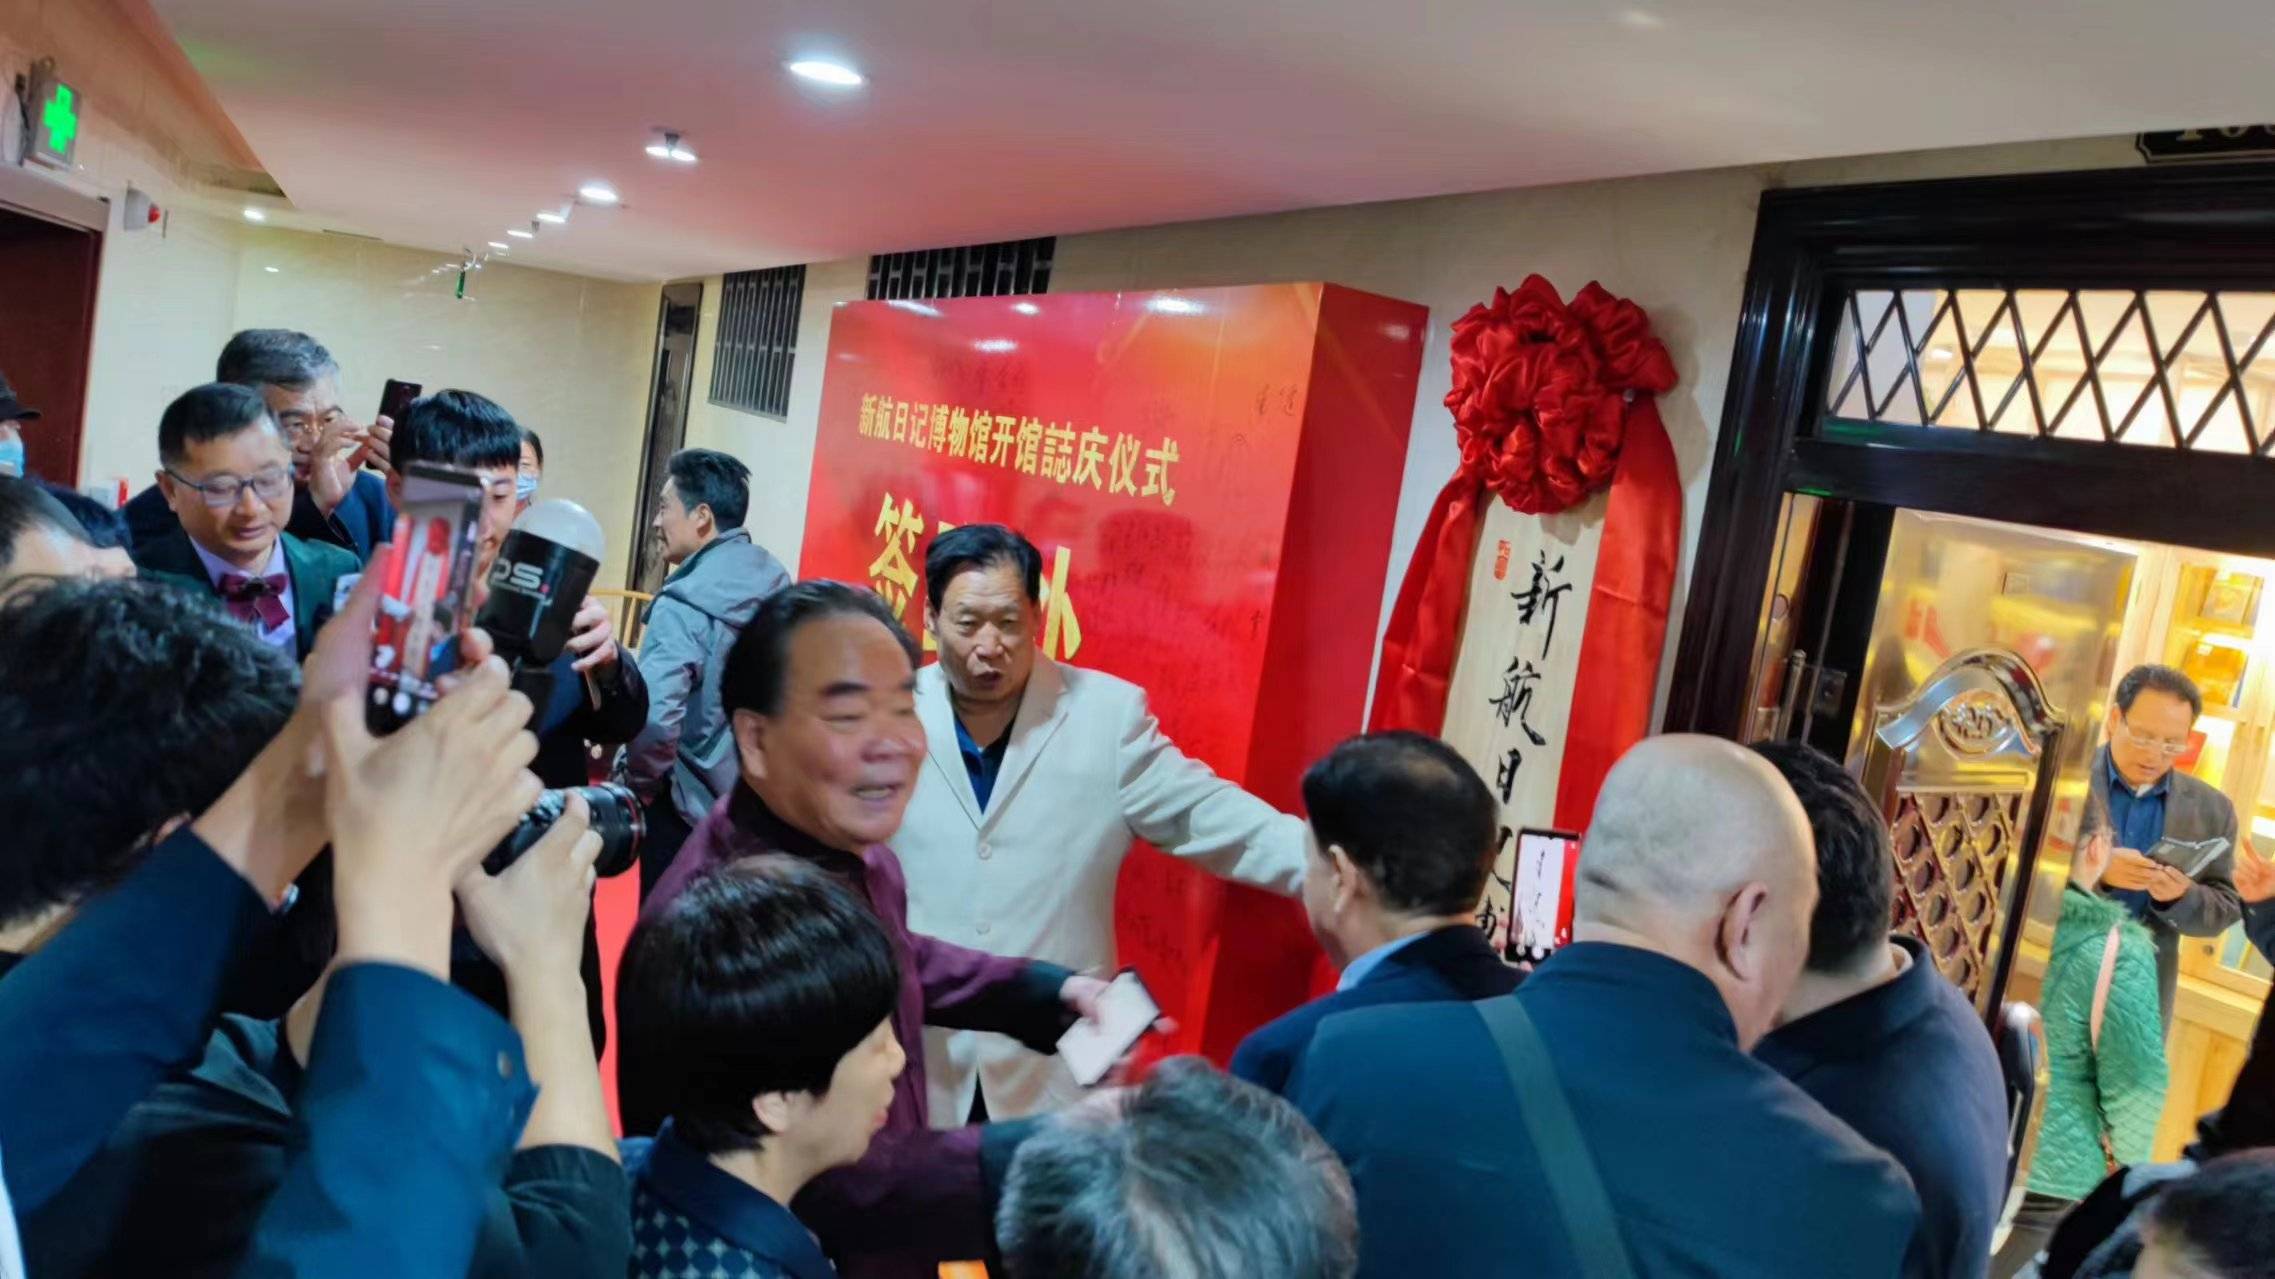 郑州新航日记博物馆“出圈 “溢出”社会公共文化效应